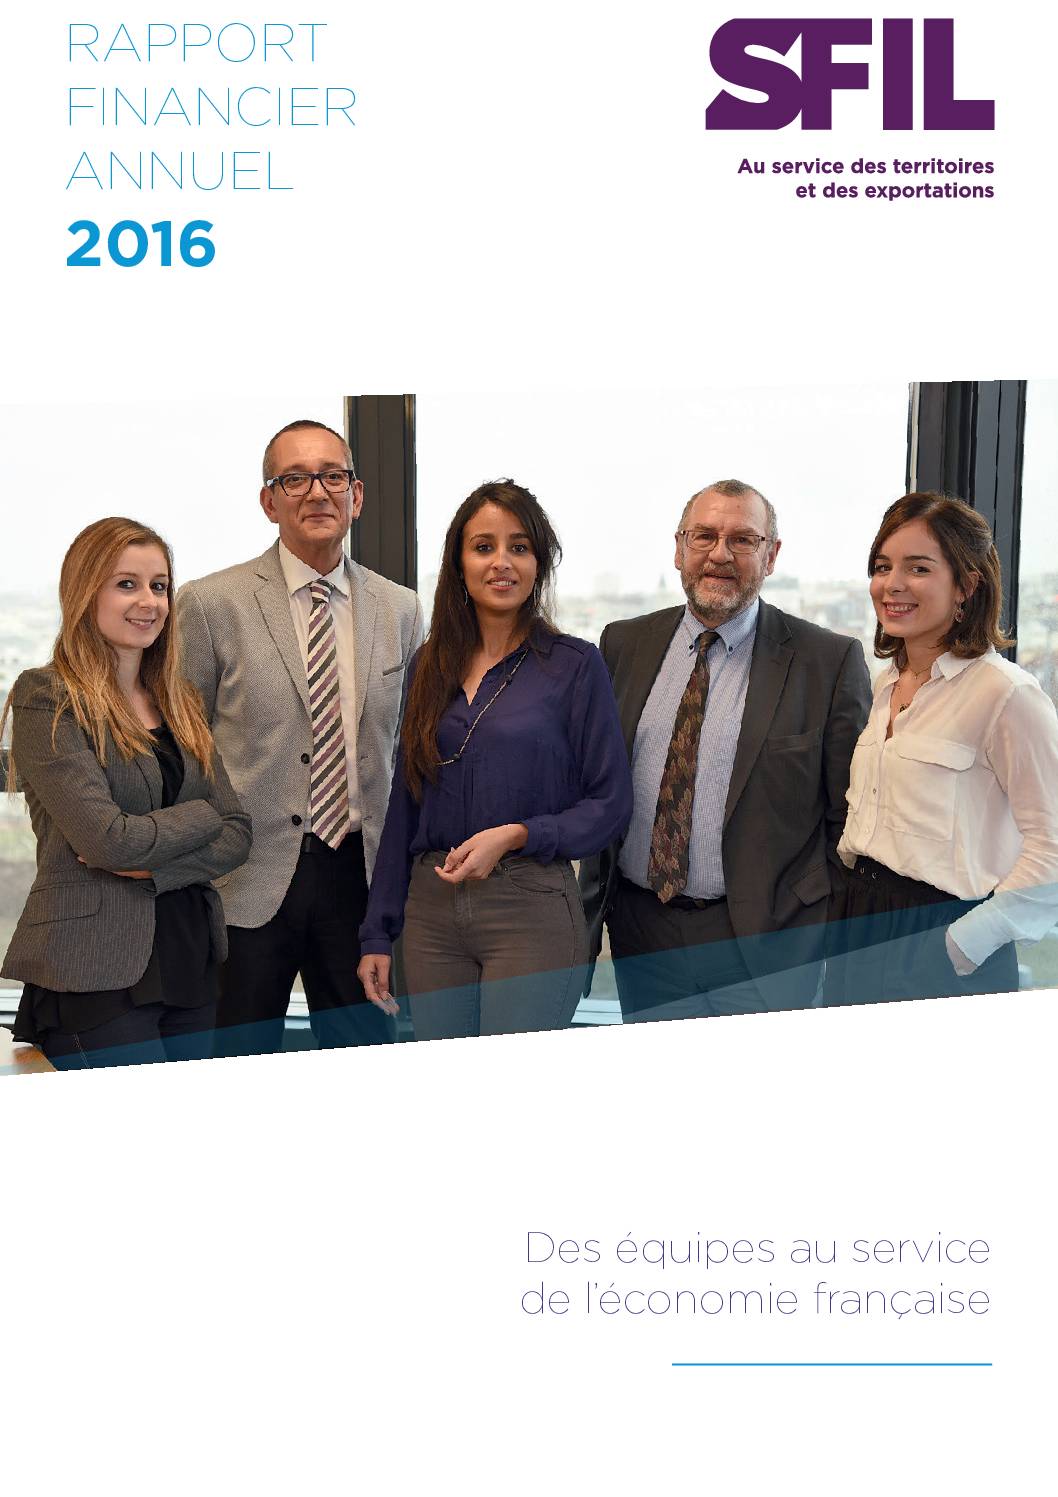 Le rapport financier annuel Sfil 2016 est disponible